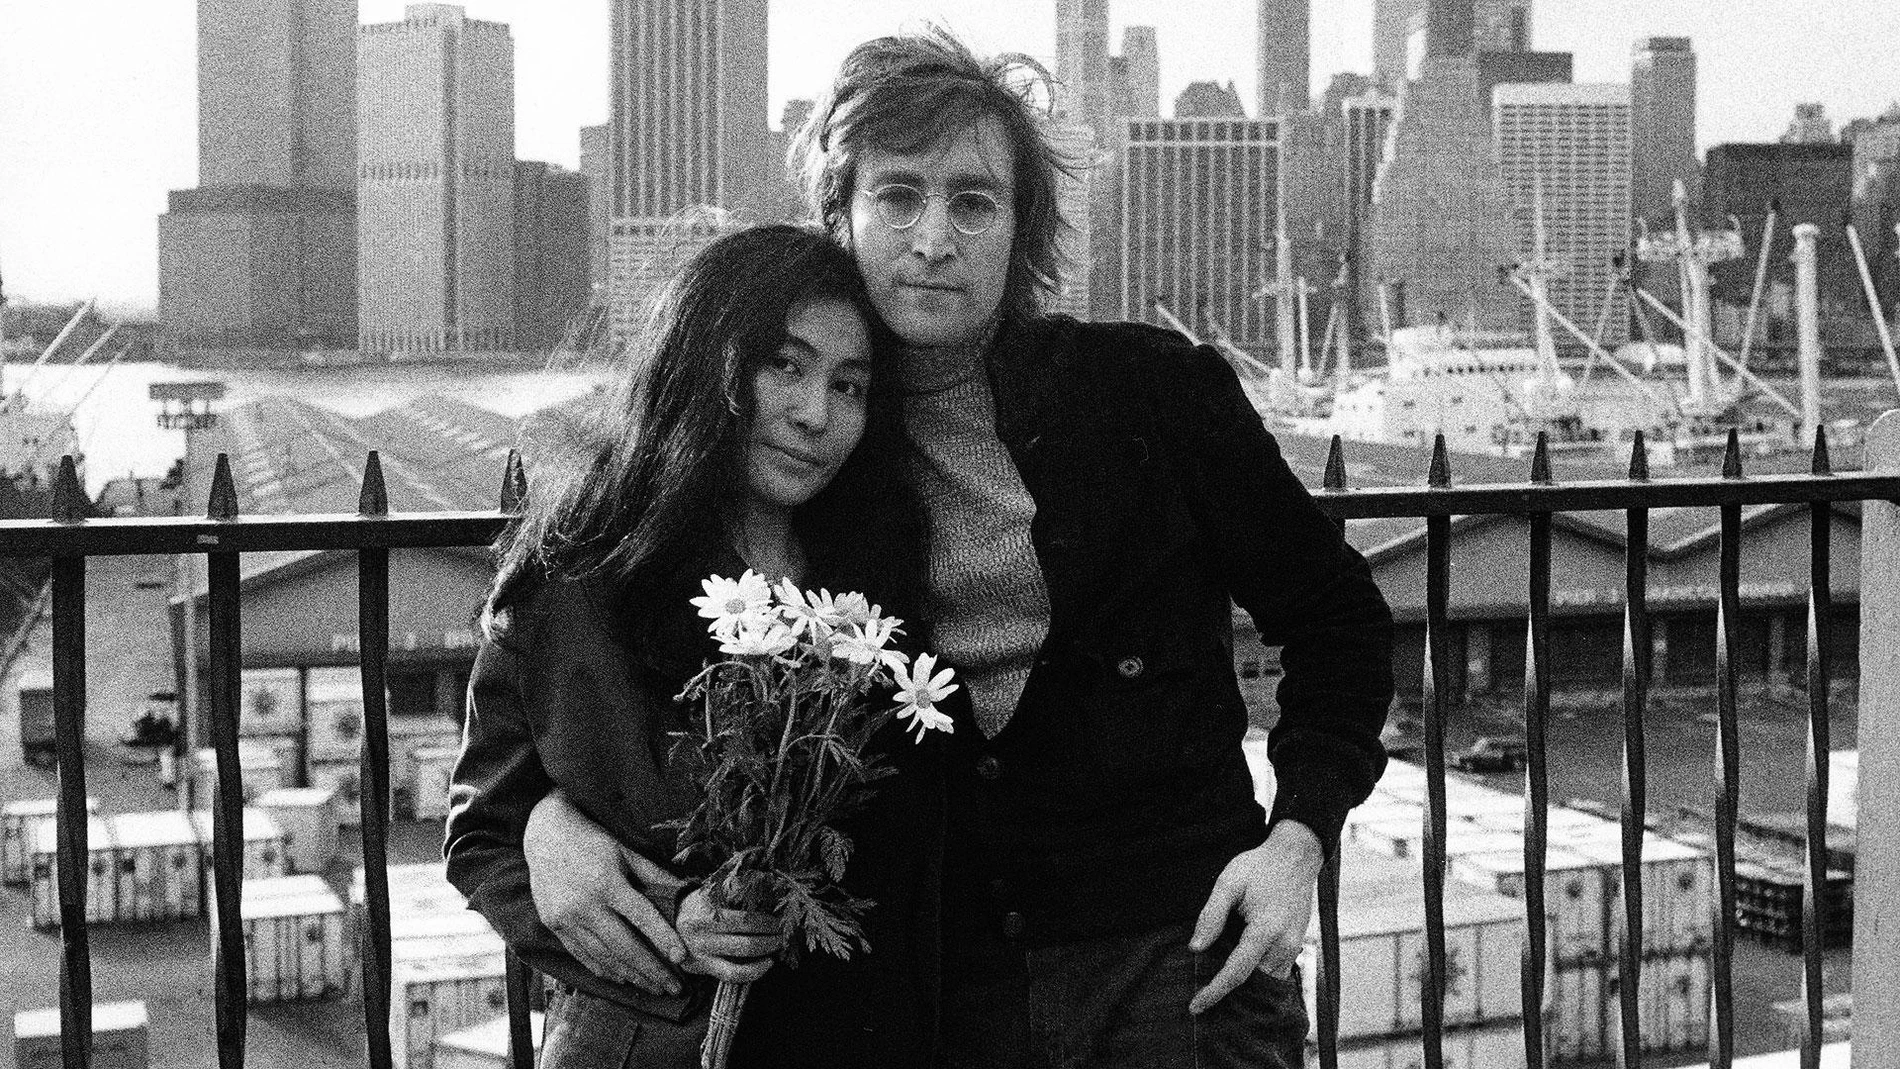 ACOFotograma de archivo cedido por el Servicio Público de Radiofusión (PBS) donde aparecen John Lennon y Yoko Ono posando en Nueva York, durante una escena del documental Lennon NYC de la serie American Masters transmitida el 9 de octubre de 2020